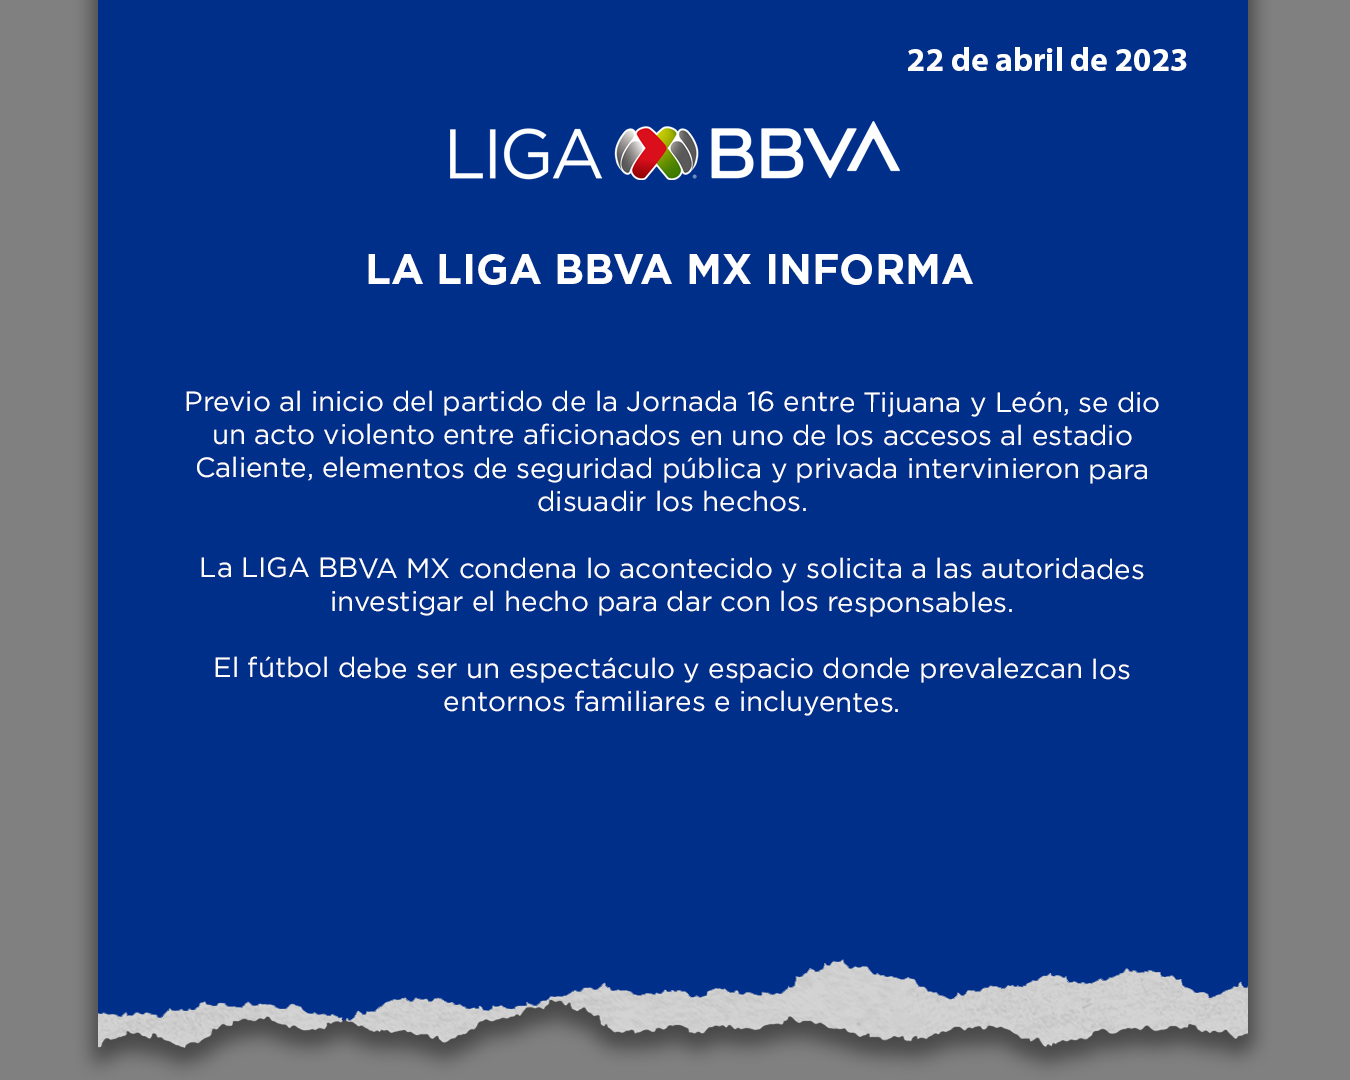 La Liga MX condenó los enfrentamientos entre fanáticos del León y Xolos. (Liga BBVA)